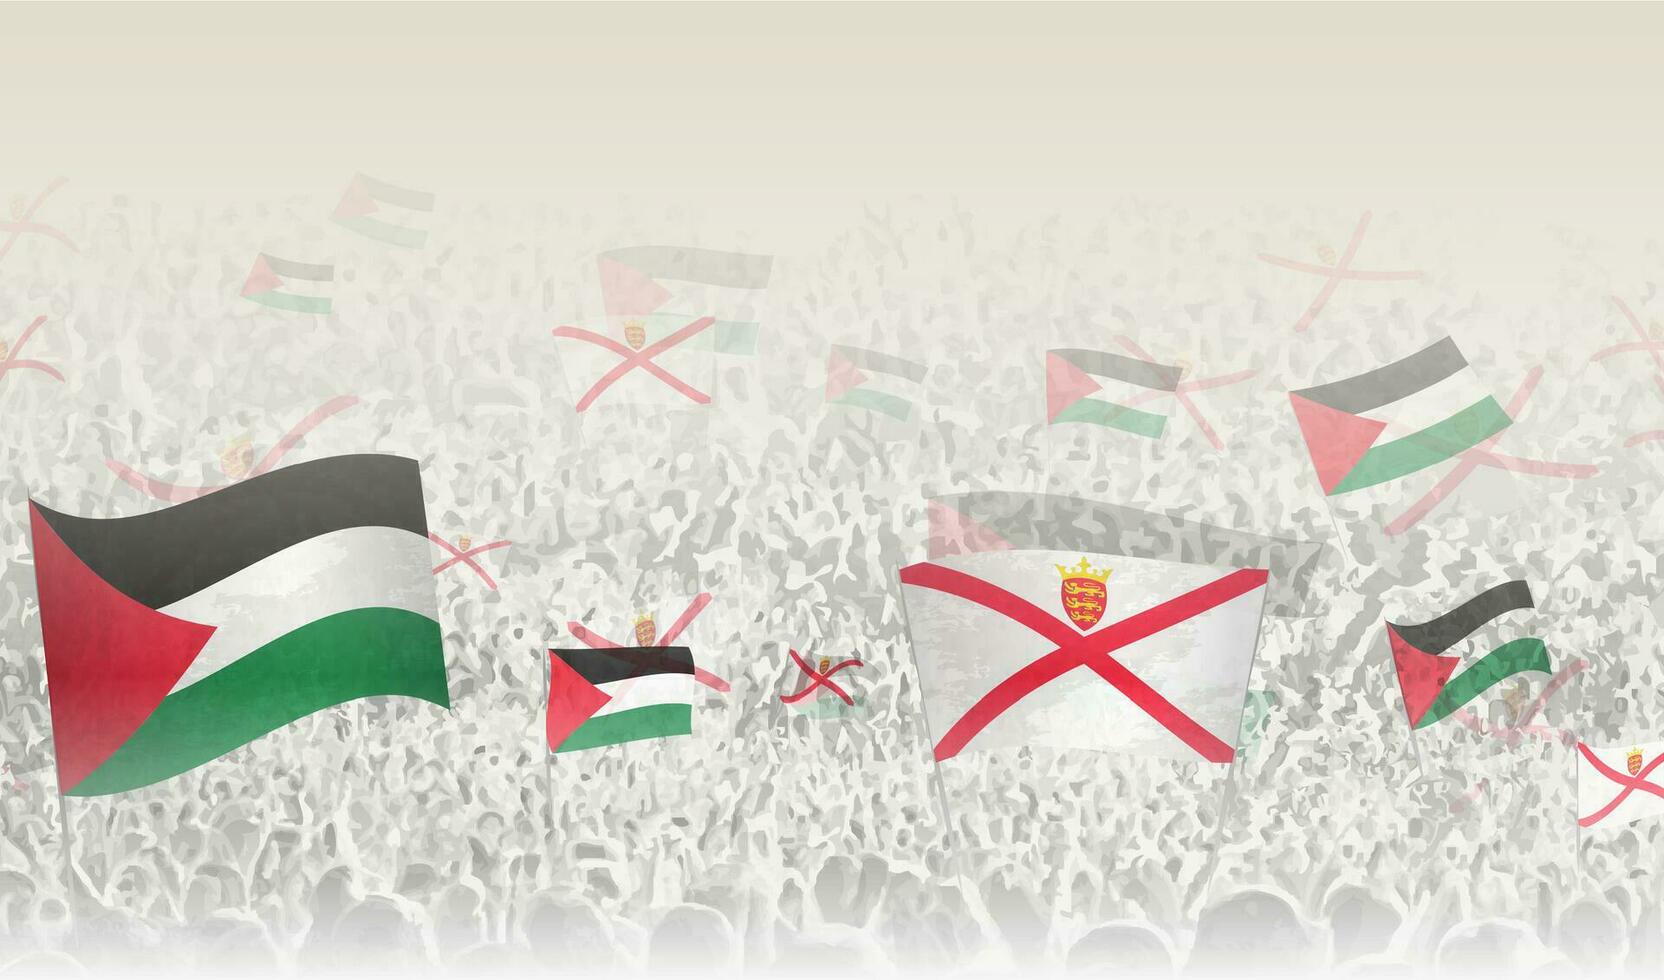 Palestine et Jersey drapeaux dans une foule de applaudissement personnes. vecteur